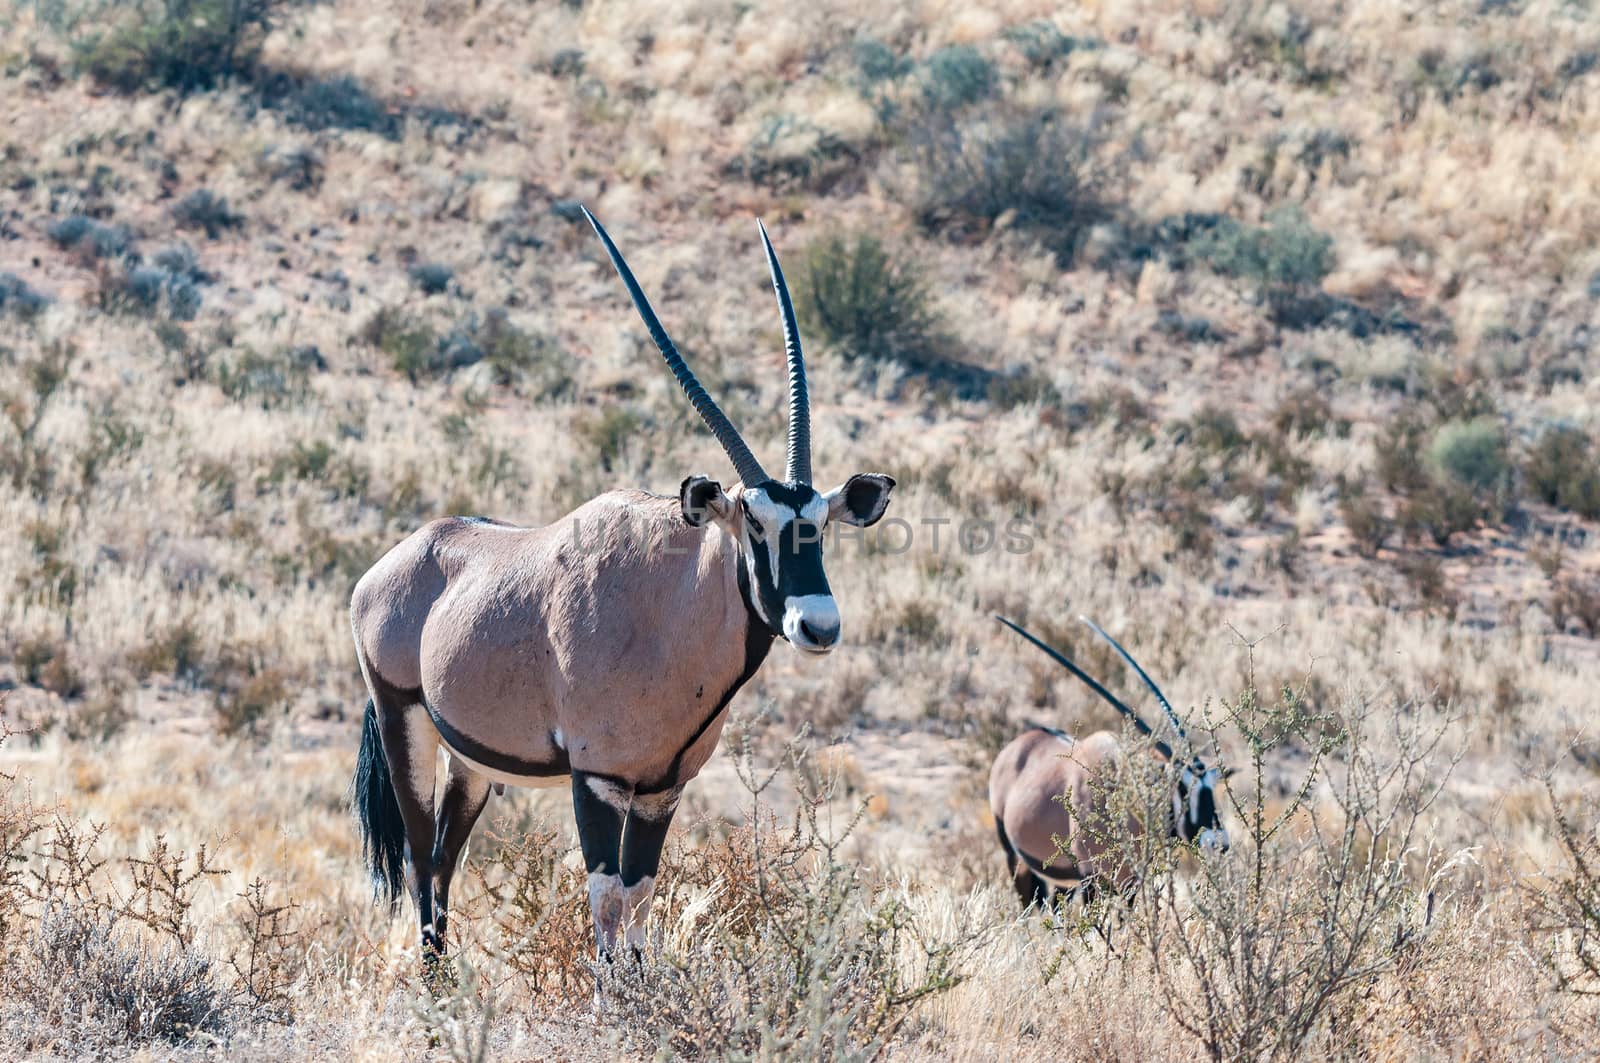 Two oryx, Oryx gazella, in the arid Kgalagadi